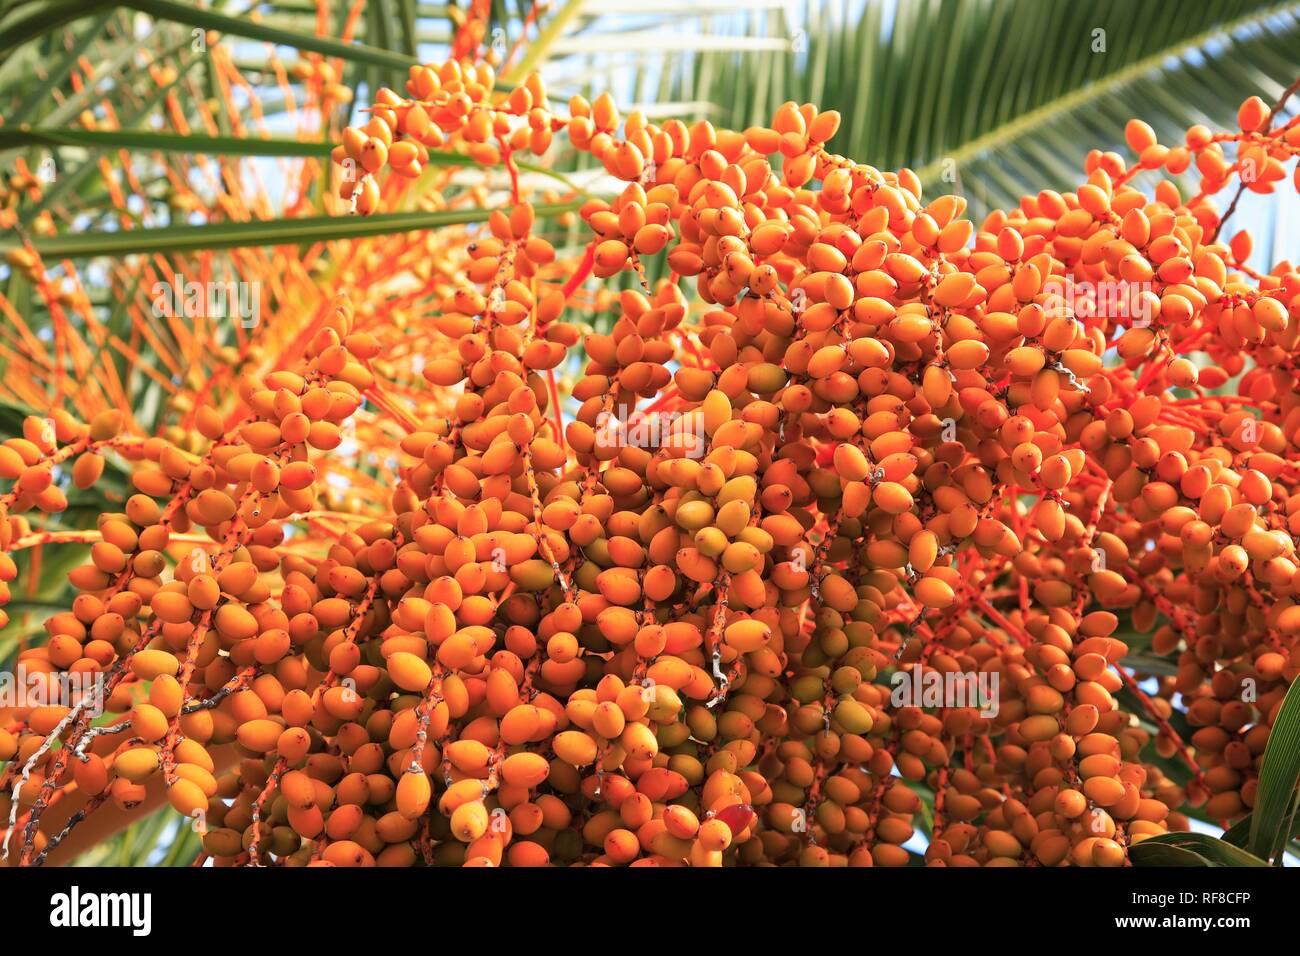 Date Palm (Phoenix dactylifera) bearing fruit Stock Photo